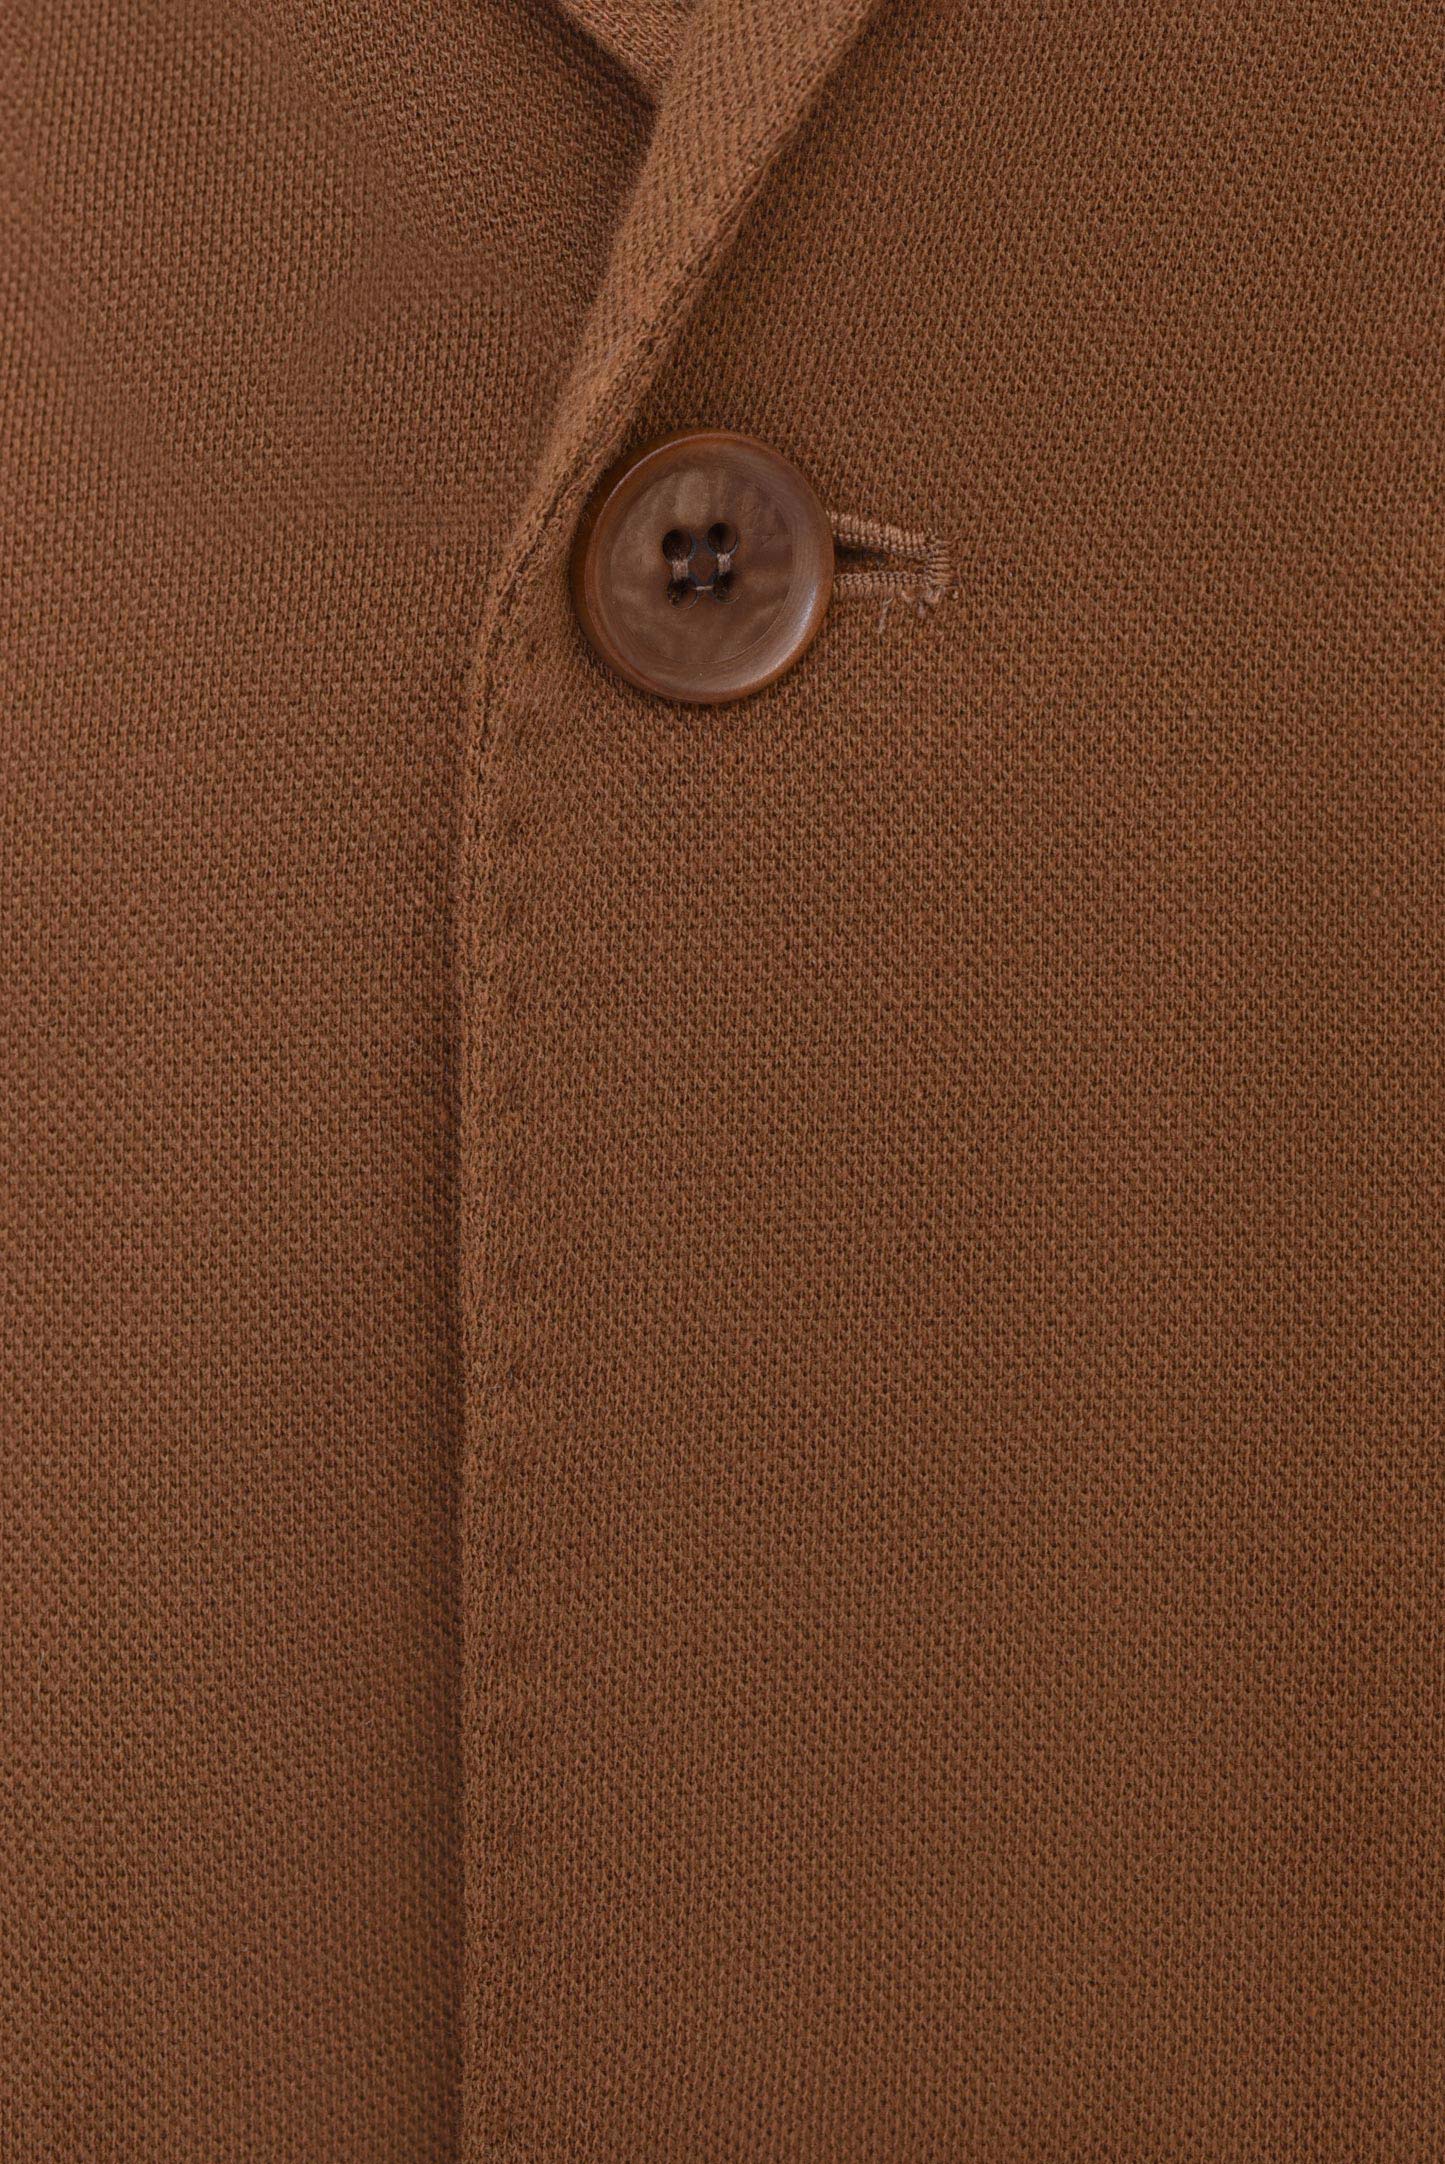 Пиджак LORO PIANA F1-FAI1664, цвет: Коричневый, Мужской